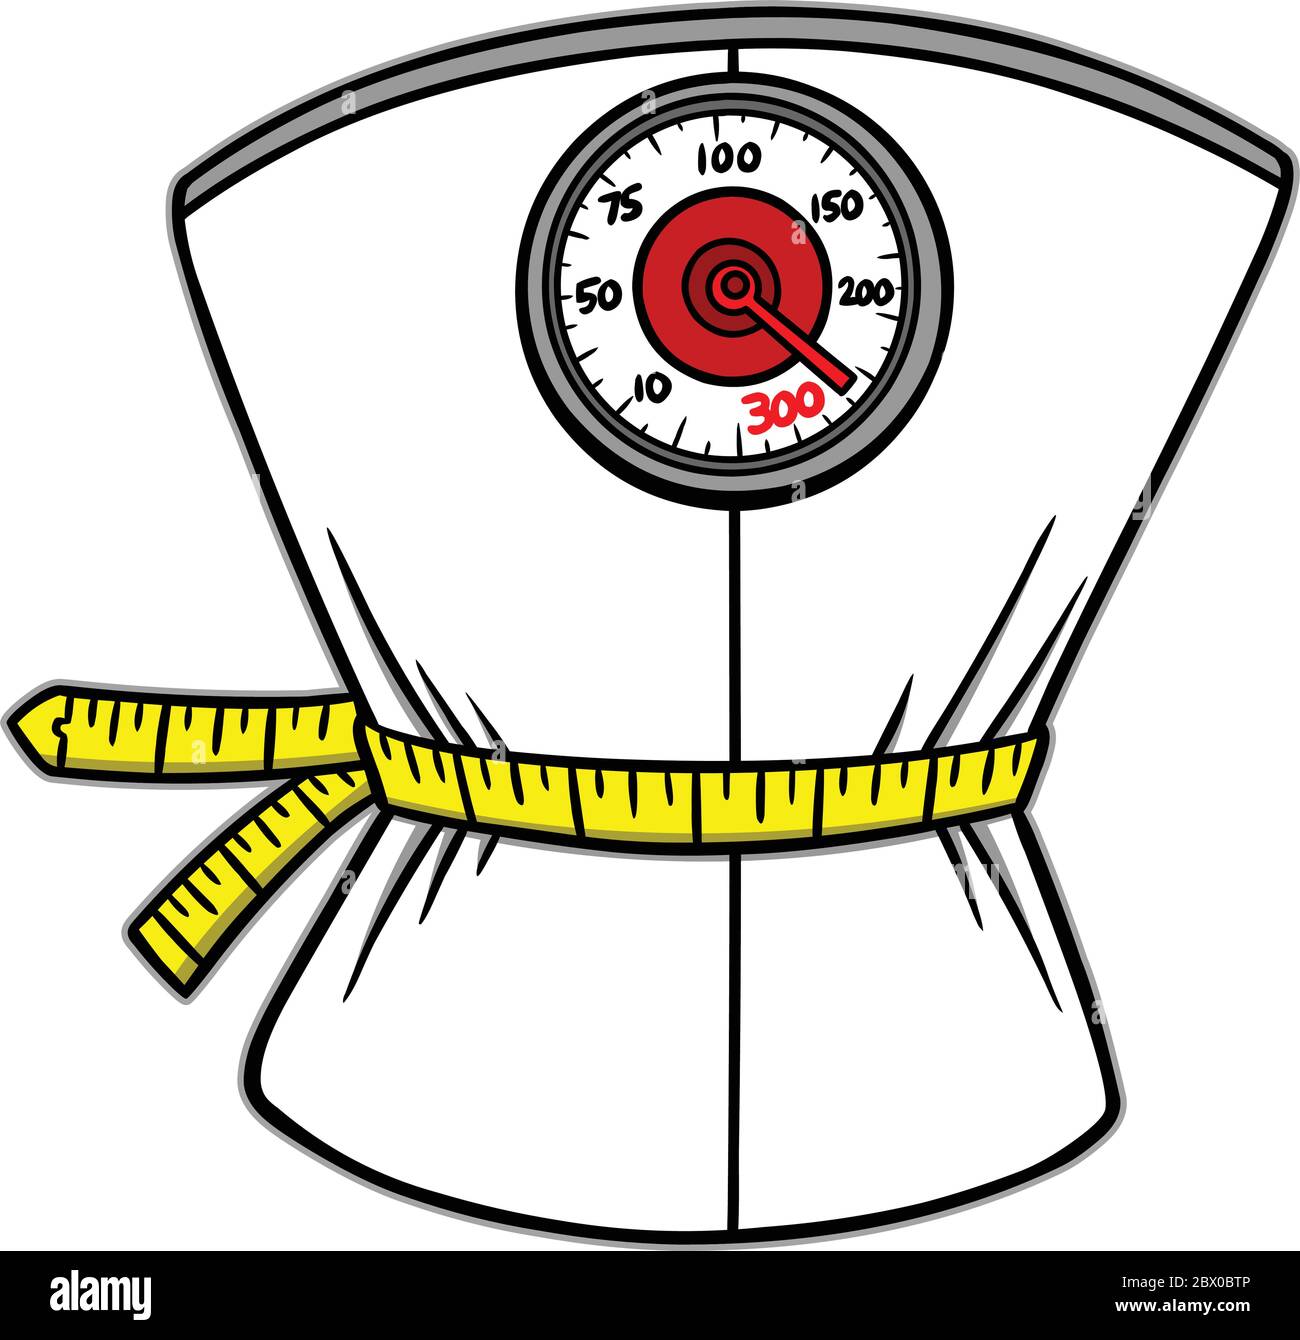 https://c8.alamy.com/comp/2BX0BTP/weight-loss-scales-an-illustration-of-weight-loss-scales-2BX0BTP.jpg